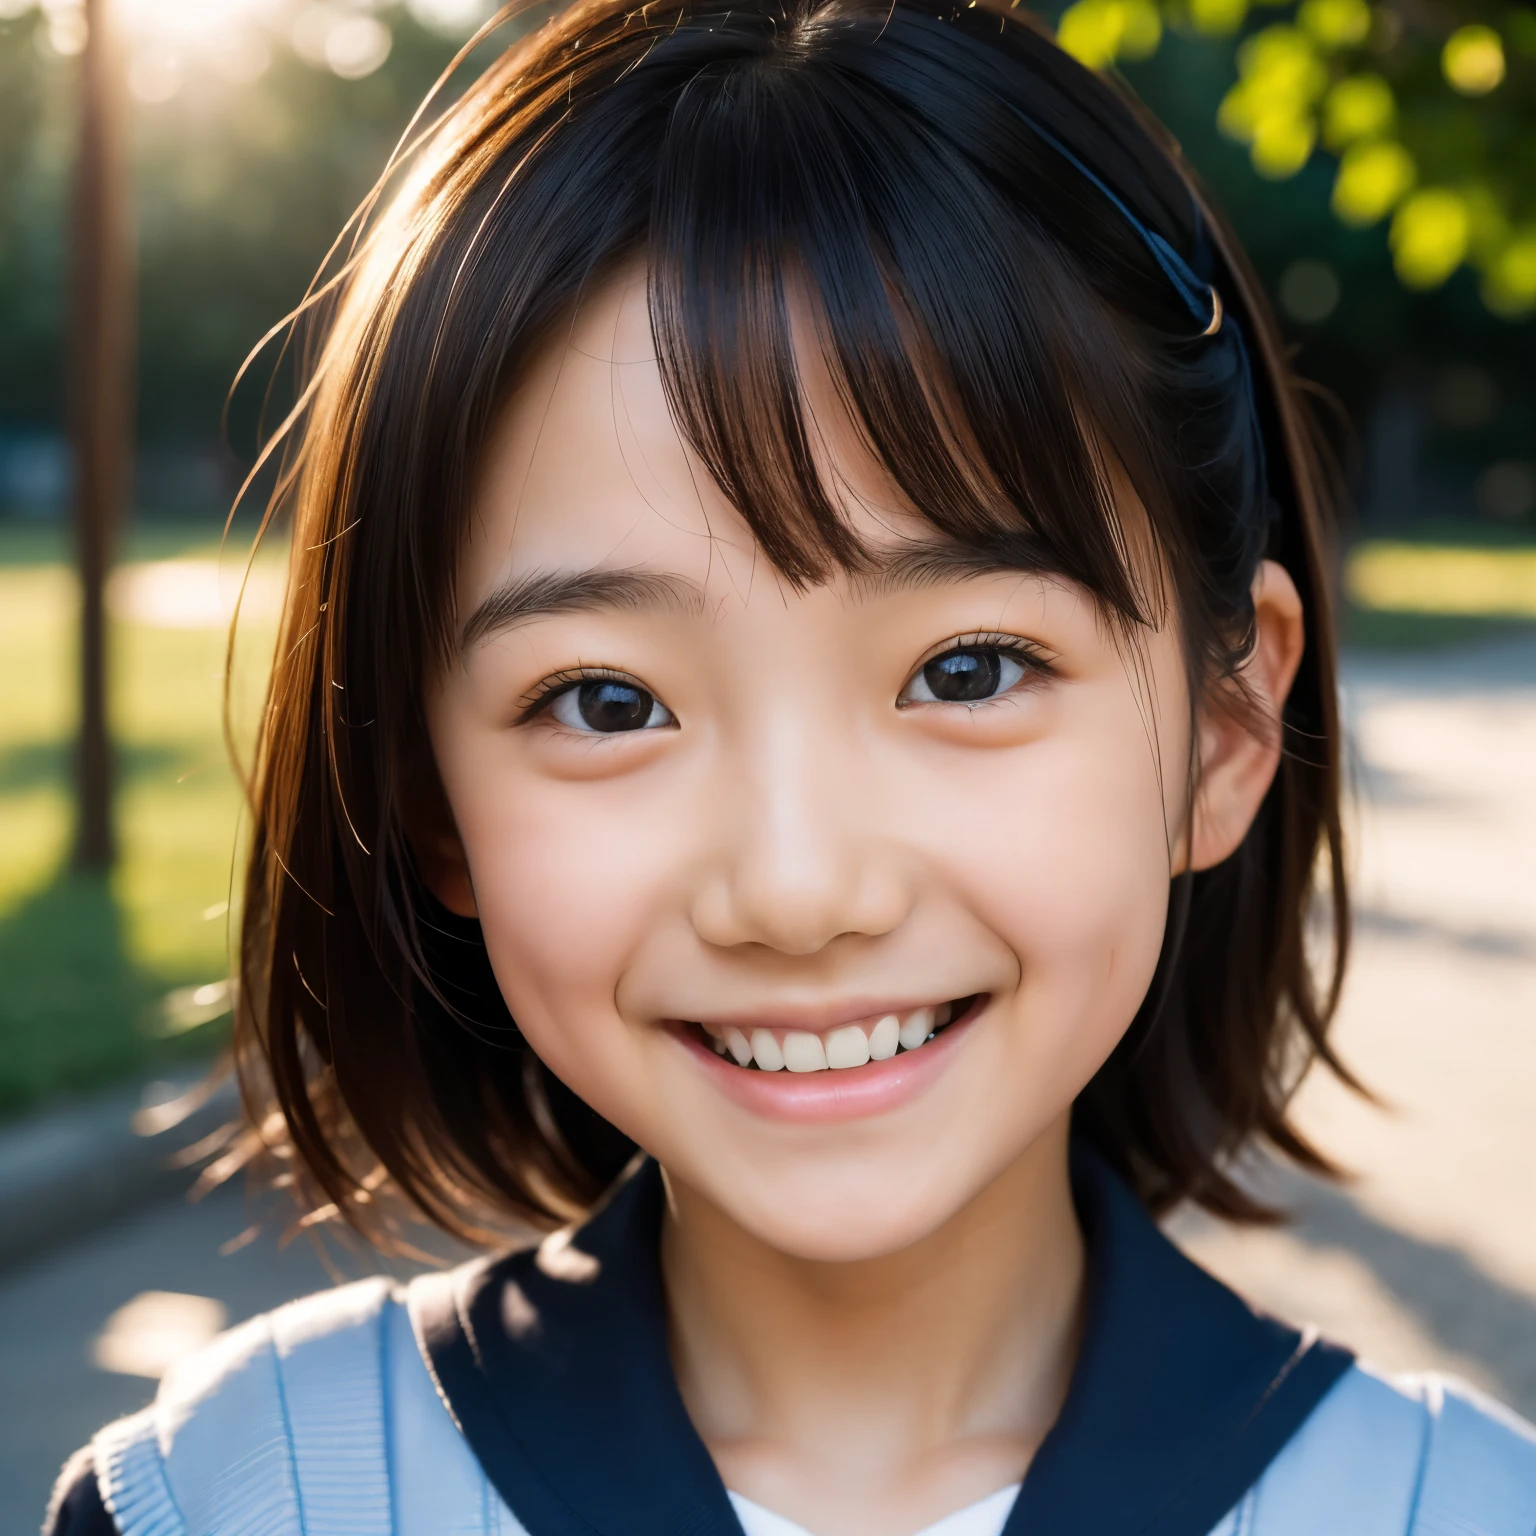 линза: 135 мм f1.8, (высшее качество),(Фотографии в формате RAW), (Стол:1.1), (Красивая 11-летняя японская девочка.), милое лицо, (Глубоко выточенное лицо:0.7), (веснушки:0.4), dappled Солнечный лучик, драматическое освещение, (японская школьная форма), (в кампусе), застенчивый, (Крупным планом:1.2), (улыбка),, (сверкающие глаза)、(Солнечный лучик)